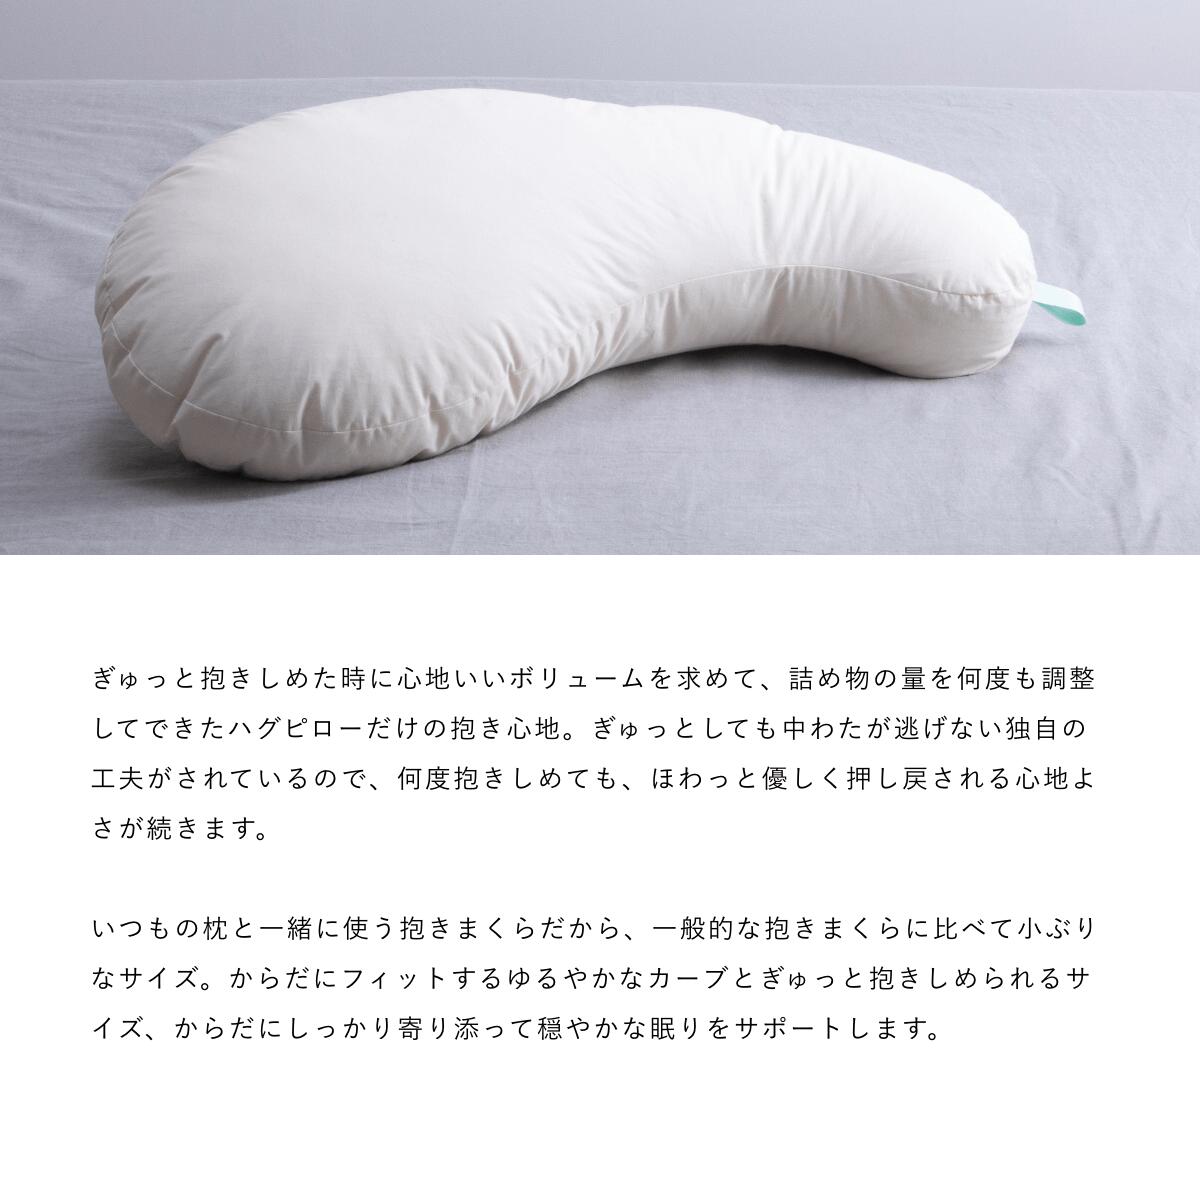 横向き寝用枕 横寝まくら 枕 S ネイチャーメイド ハグピロー スモール カバー付き Megumi 抱き枕 オーガニックコットン 日本製